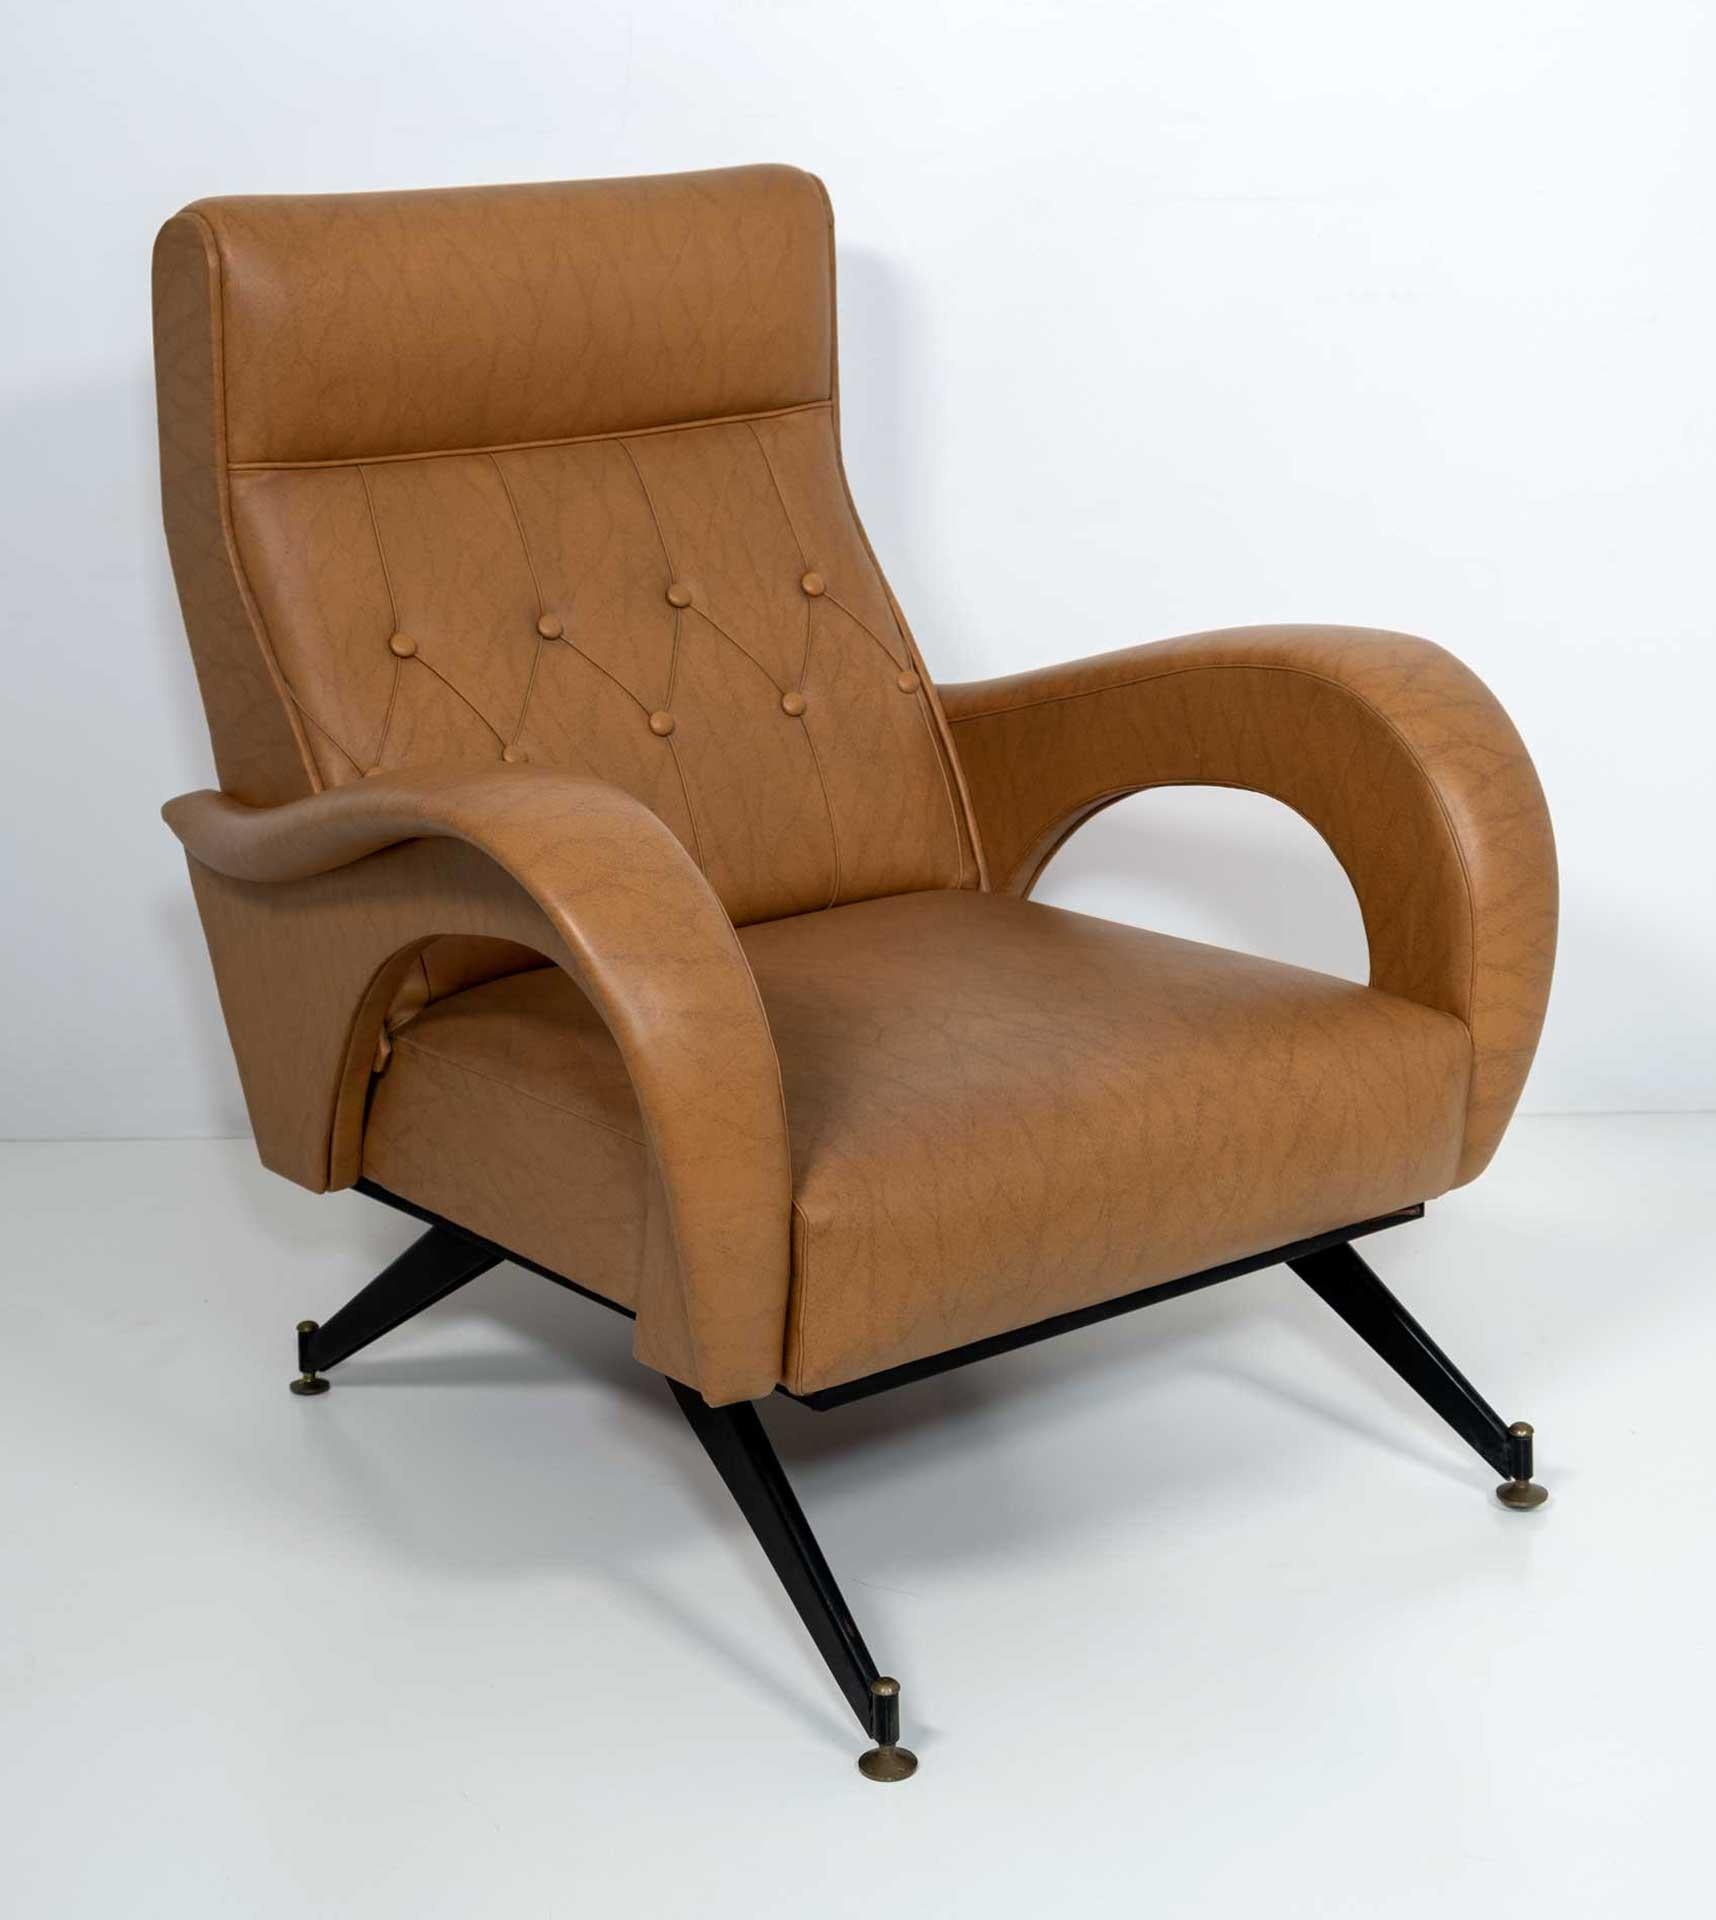 Loungesessel im Stil von Marco Zanuso aus den 60er Jahren, bezogen mit Öko-Leder. Die Polsterung ist original und in gutem Zustand, wie auf den Fotos zu sehen.